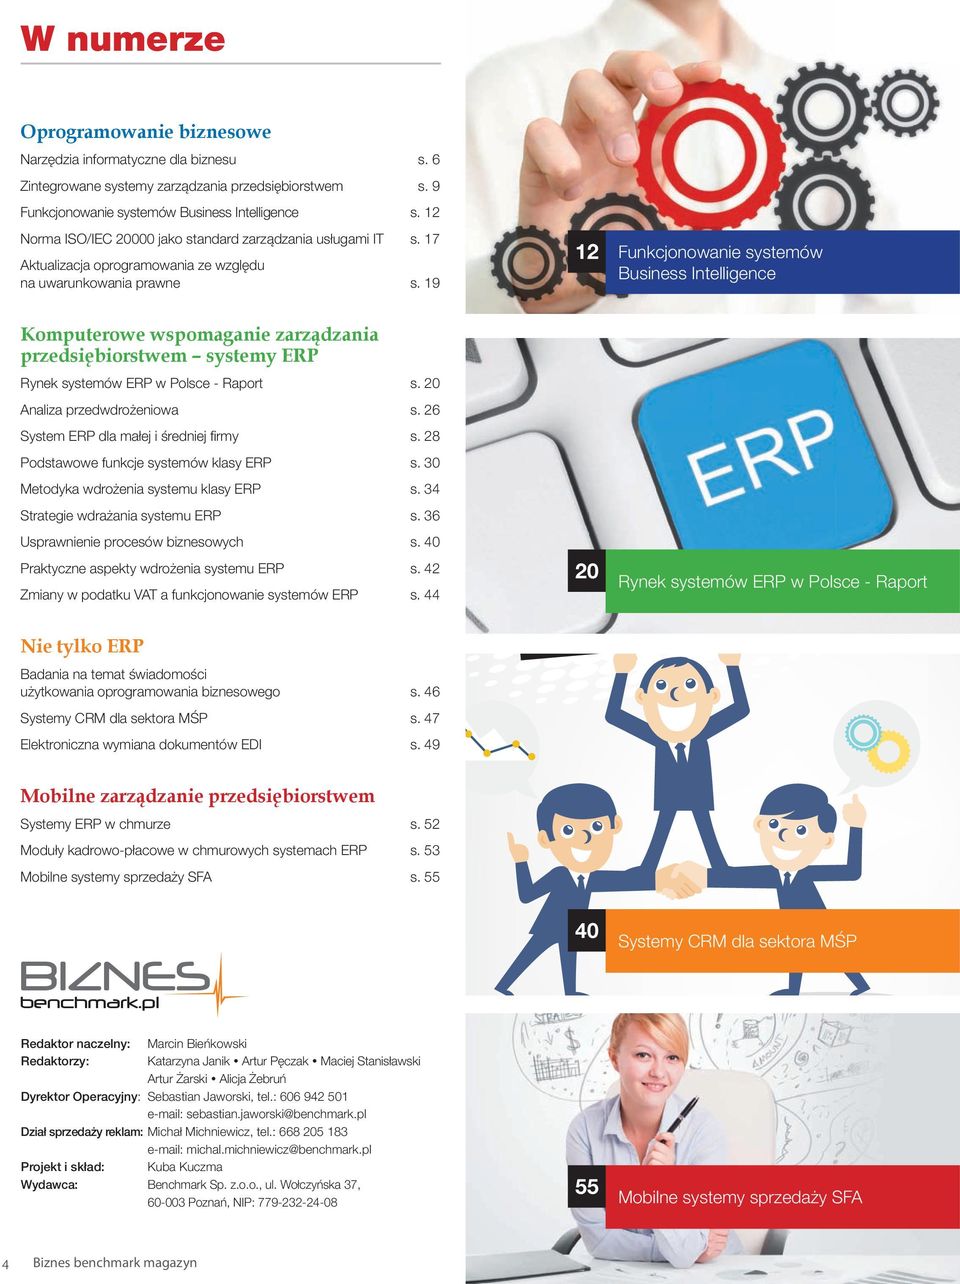 19 12 Funkcjonowanie systemów Business Intelligence Komputerowe wspomaganie zarządzania przedsiębiorstwem systemy ERP Rynek systemów ERP w Polsce - Raport s. 20 Analiza przedwdrożeniowa s.